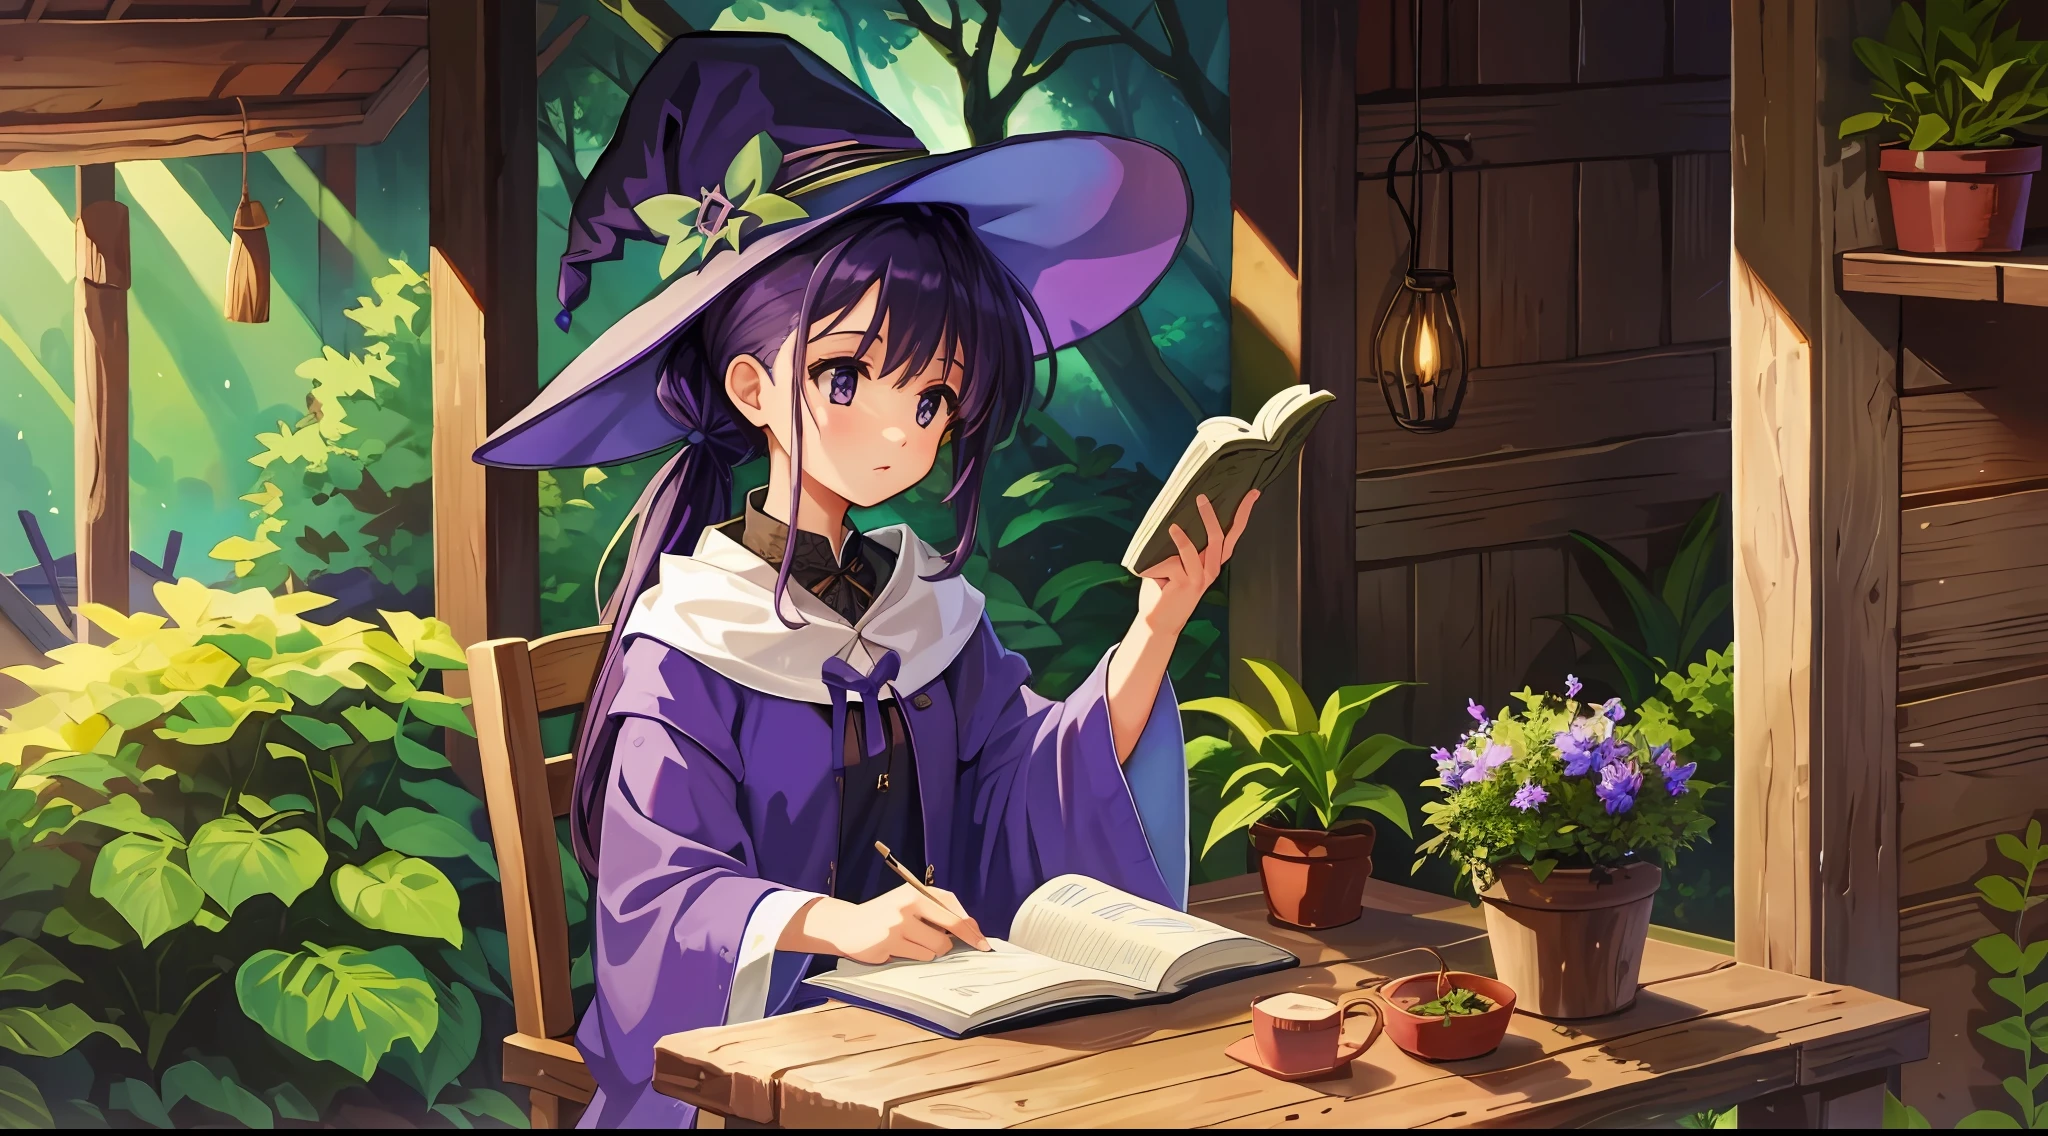 女の子, 紫色の髪, ハイポニーテールのヘアスタイル, 魔女, 小屋の中で, 小さな木製のテーブル, 木の椅子に座っている, 読む, 鉢植え, 魔法の帽子, 森, シングル